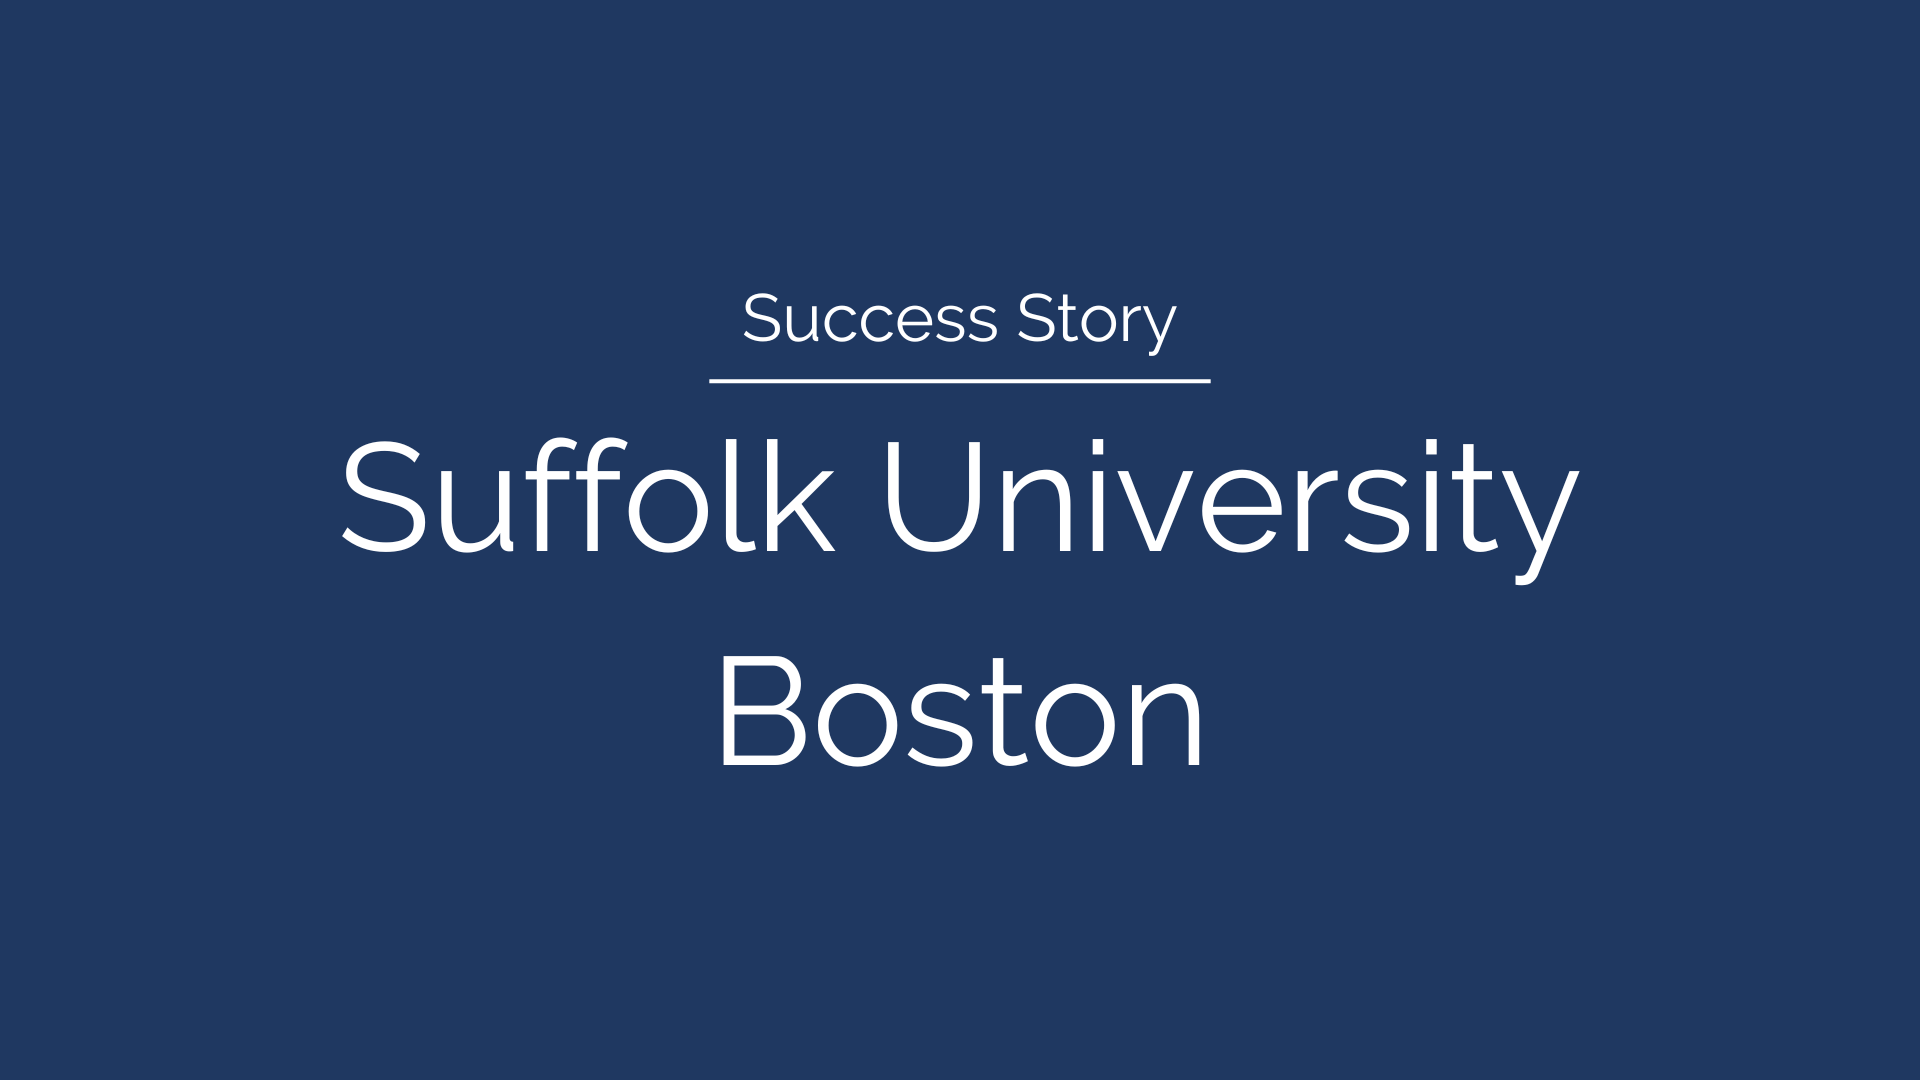 Success Story: Suffolk University Boston